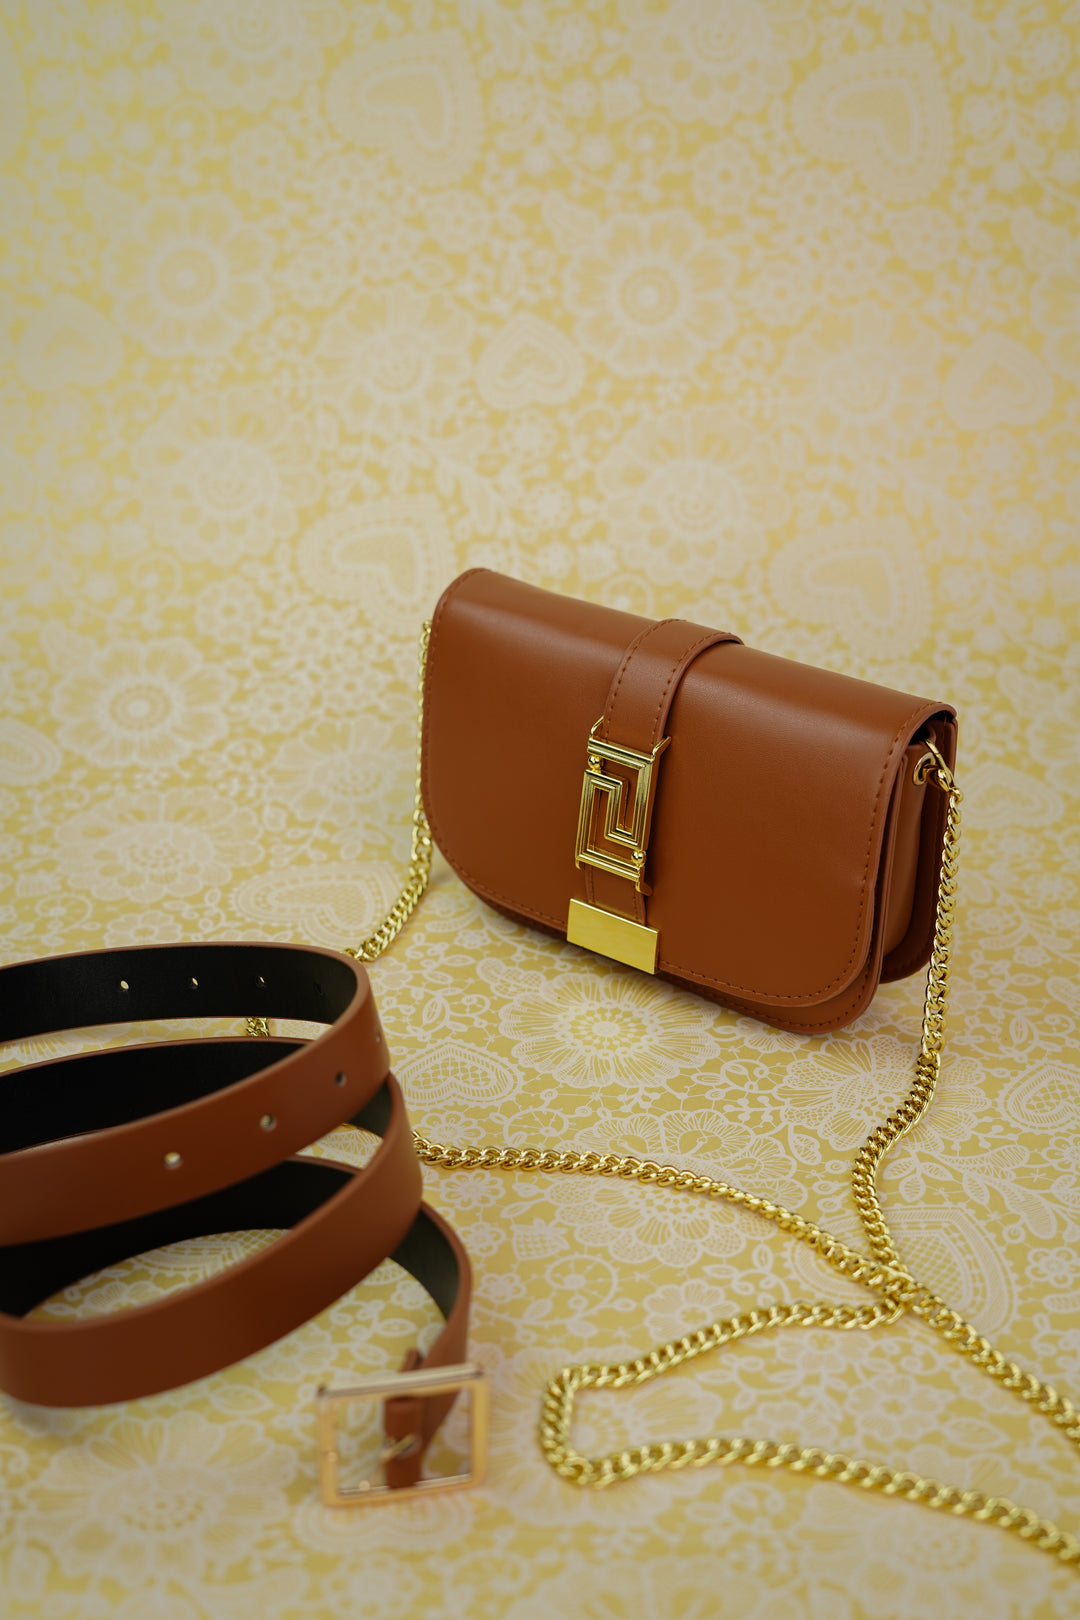 Elegantly Designed Rustic Rose Belt Bag with Floral Embellishments